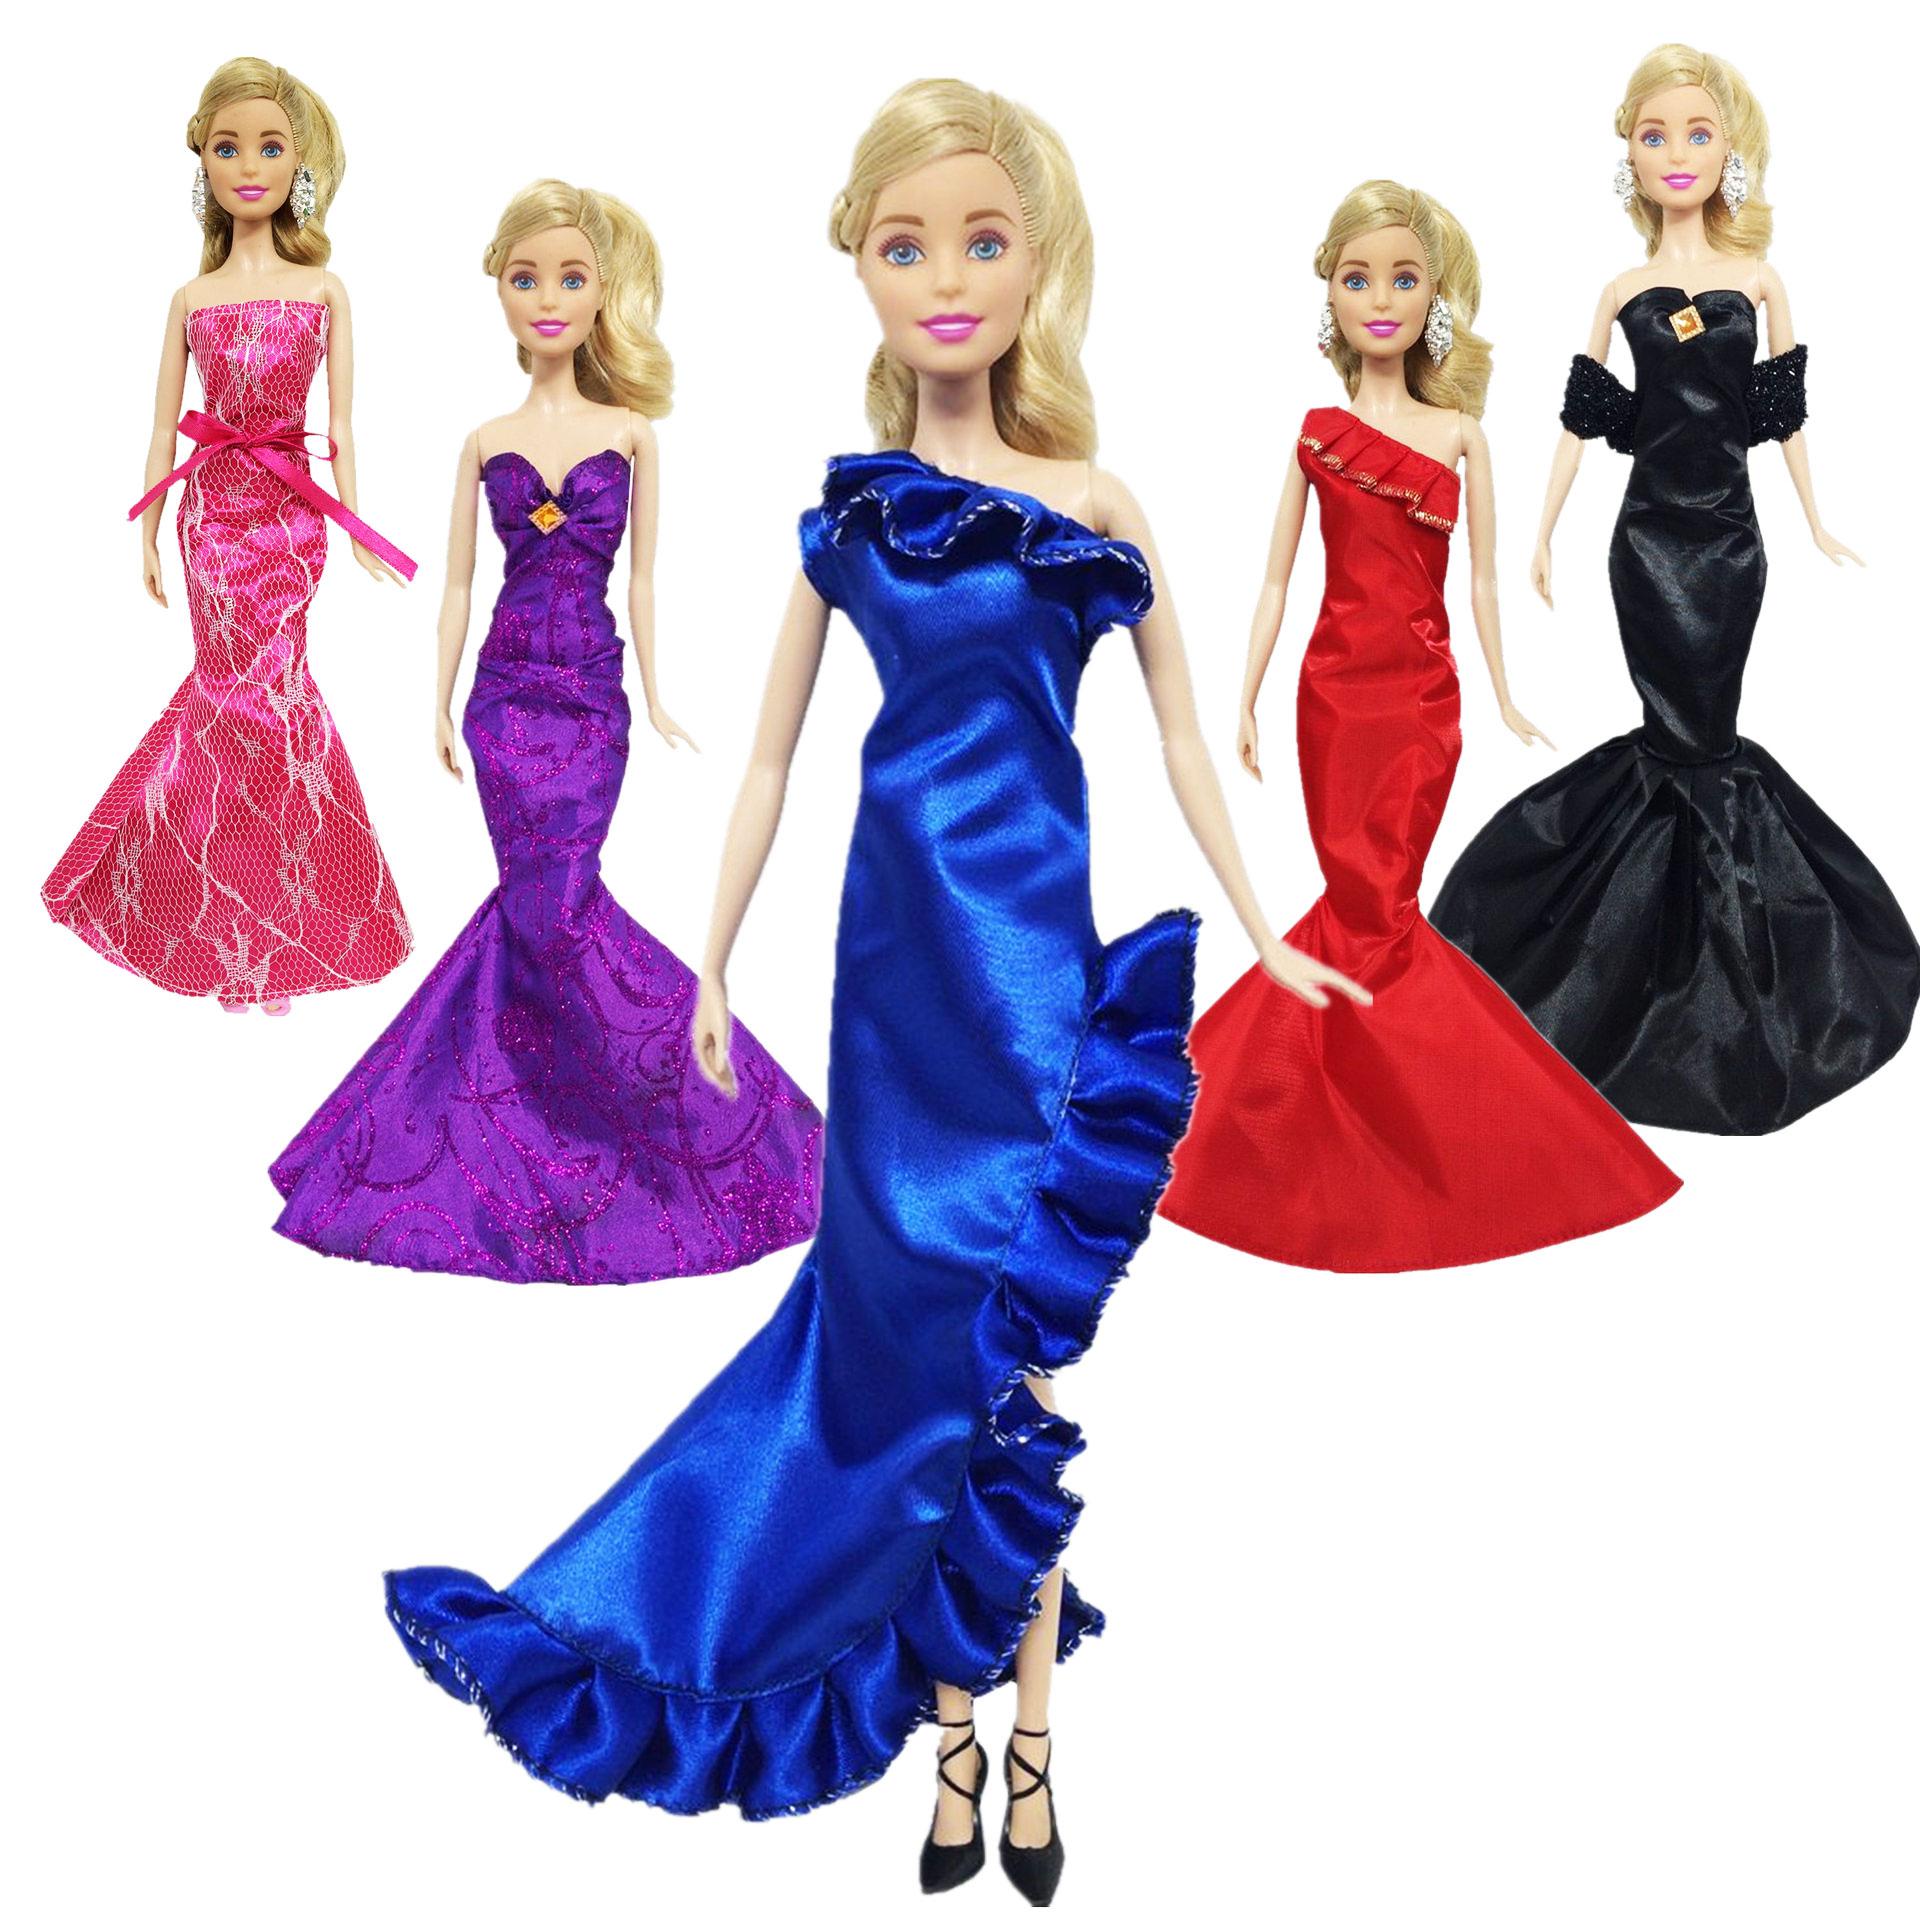 Hướng dẫn cách may váy xòe cực đơn giản cho búp bê Barbie | Chị SuSi TV -  YouTube